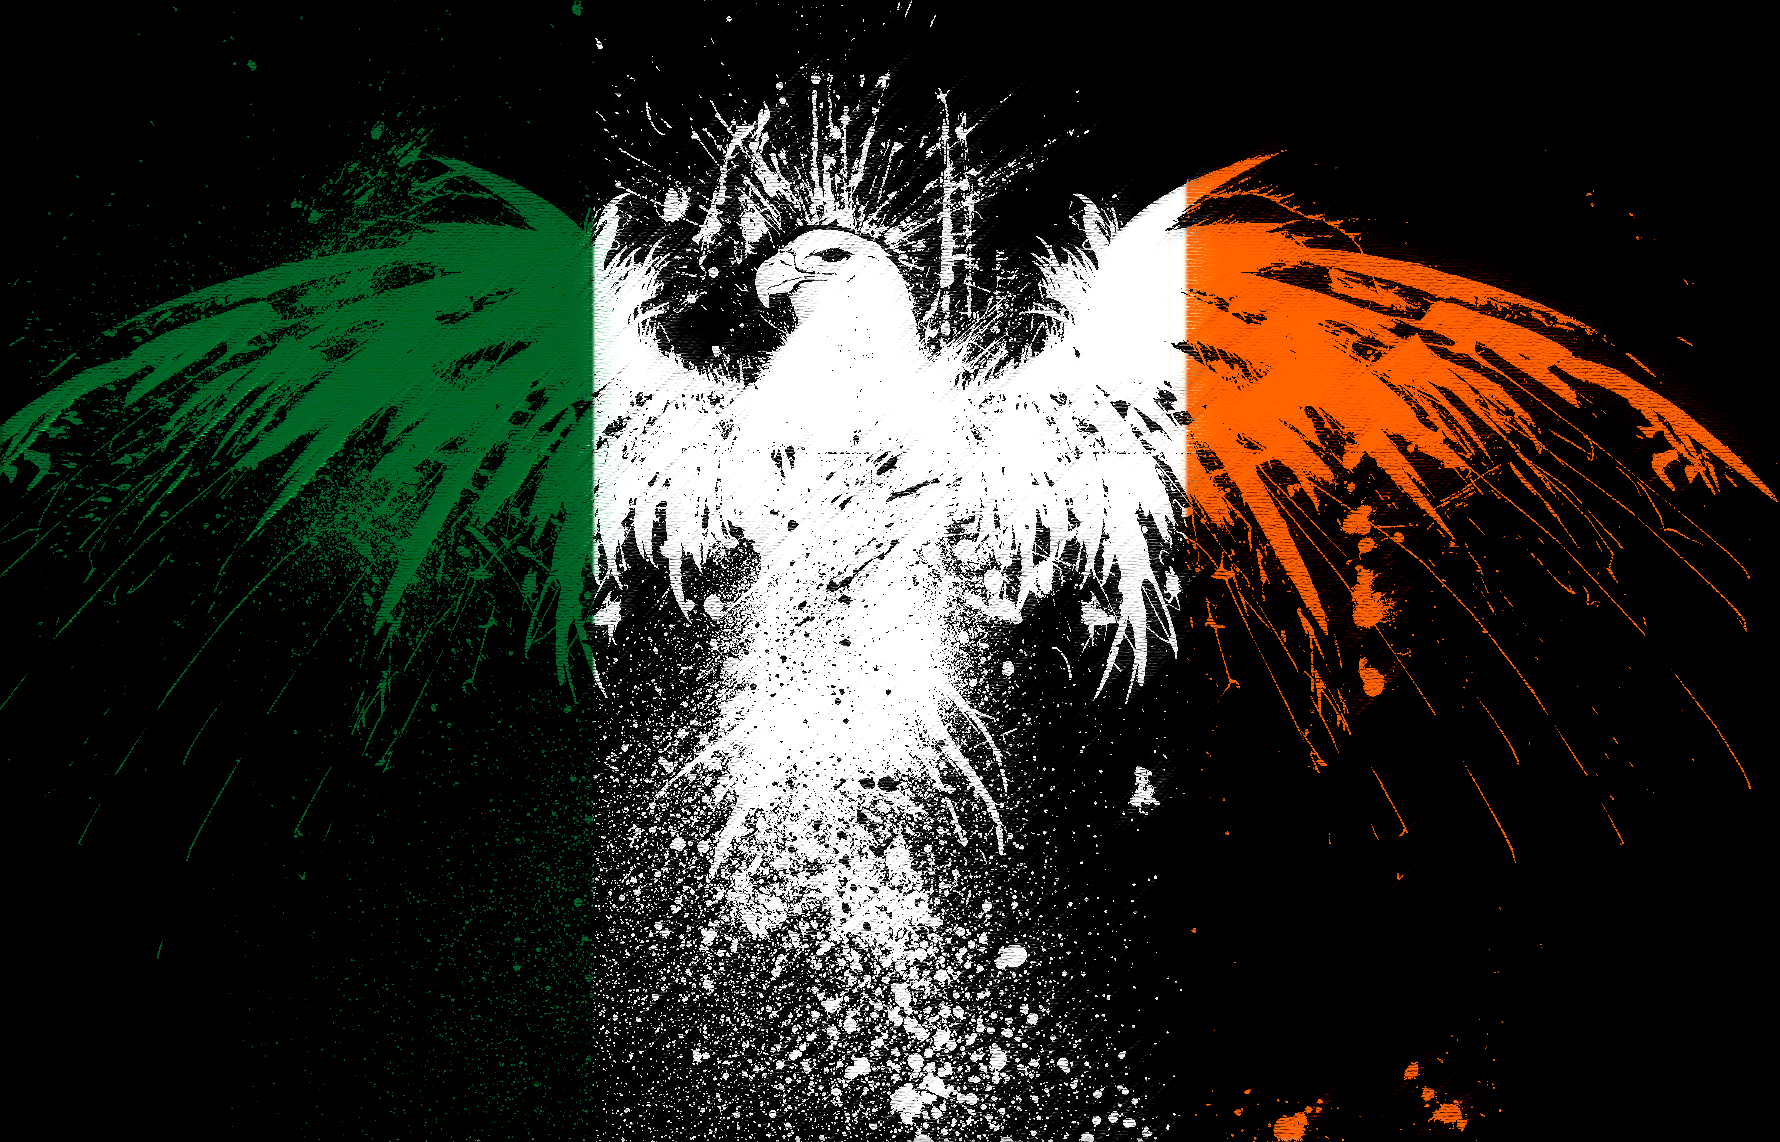 50+] Irish Flag Wallpaper for iPhone - WallpaperSafari